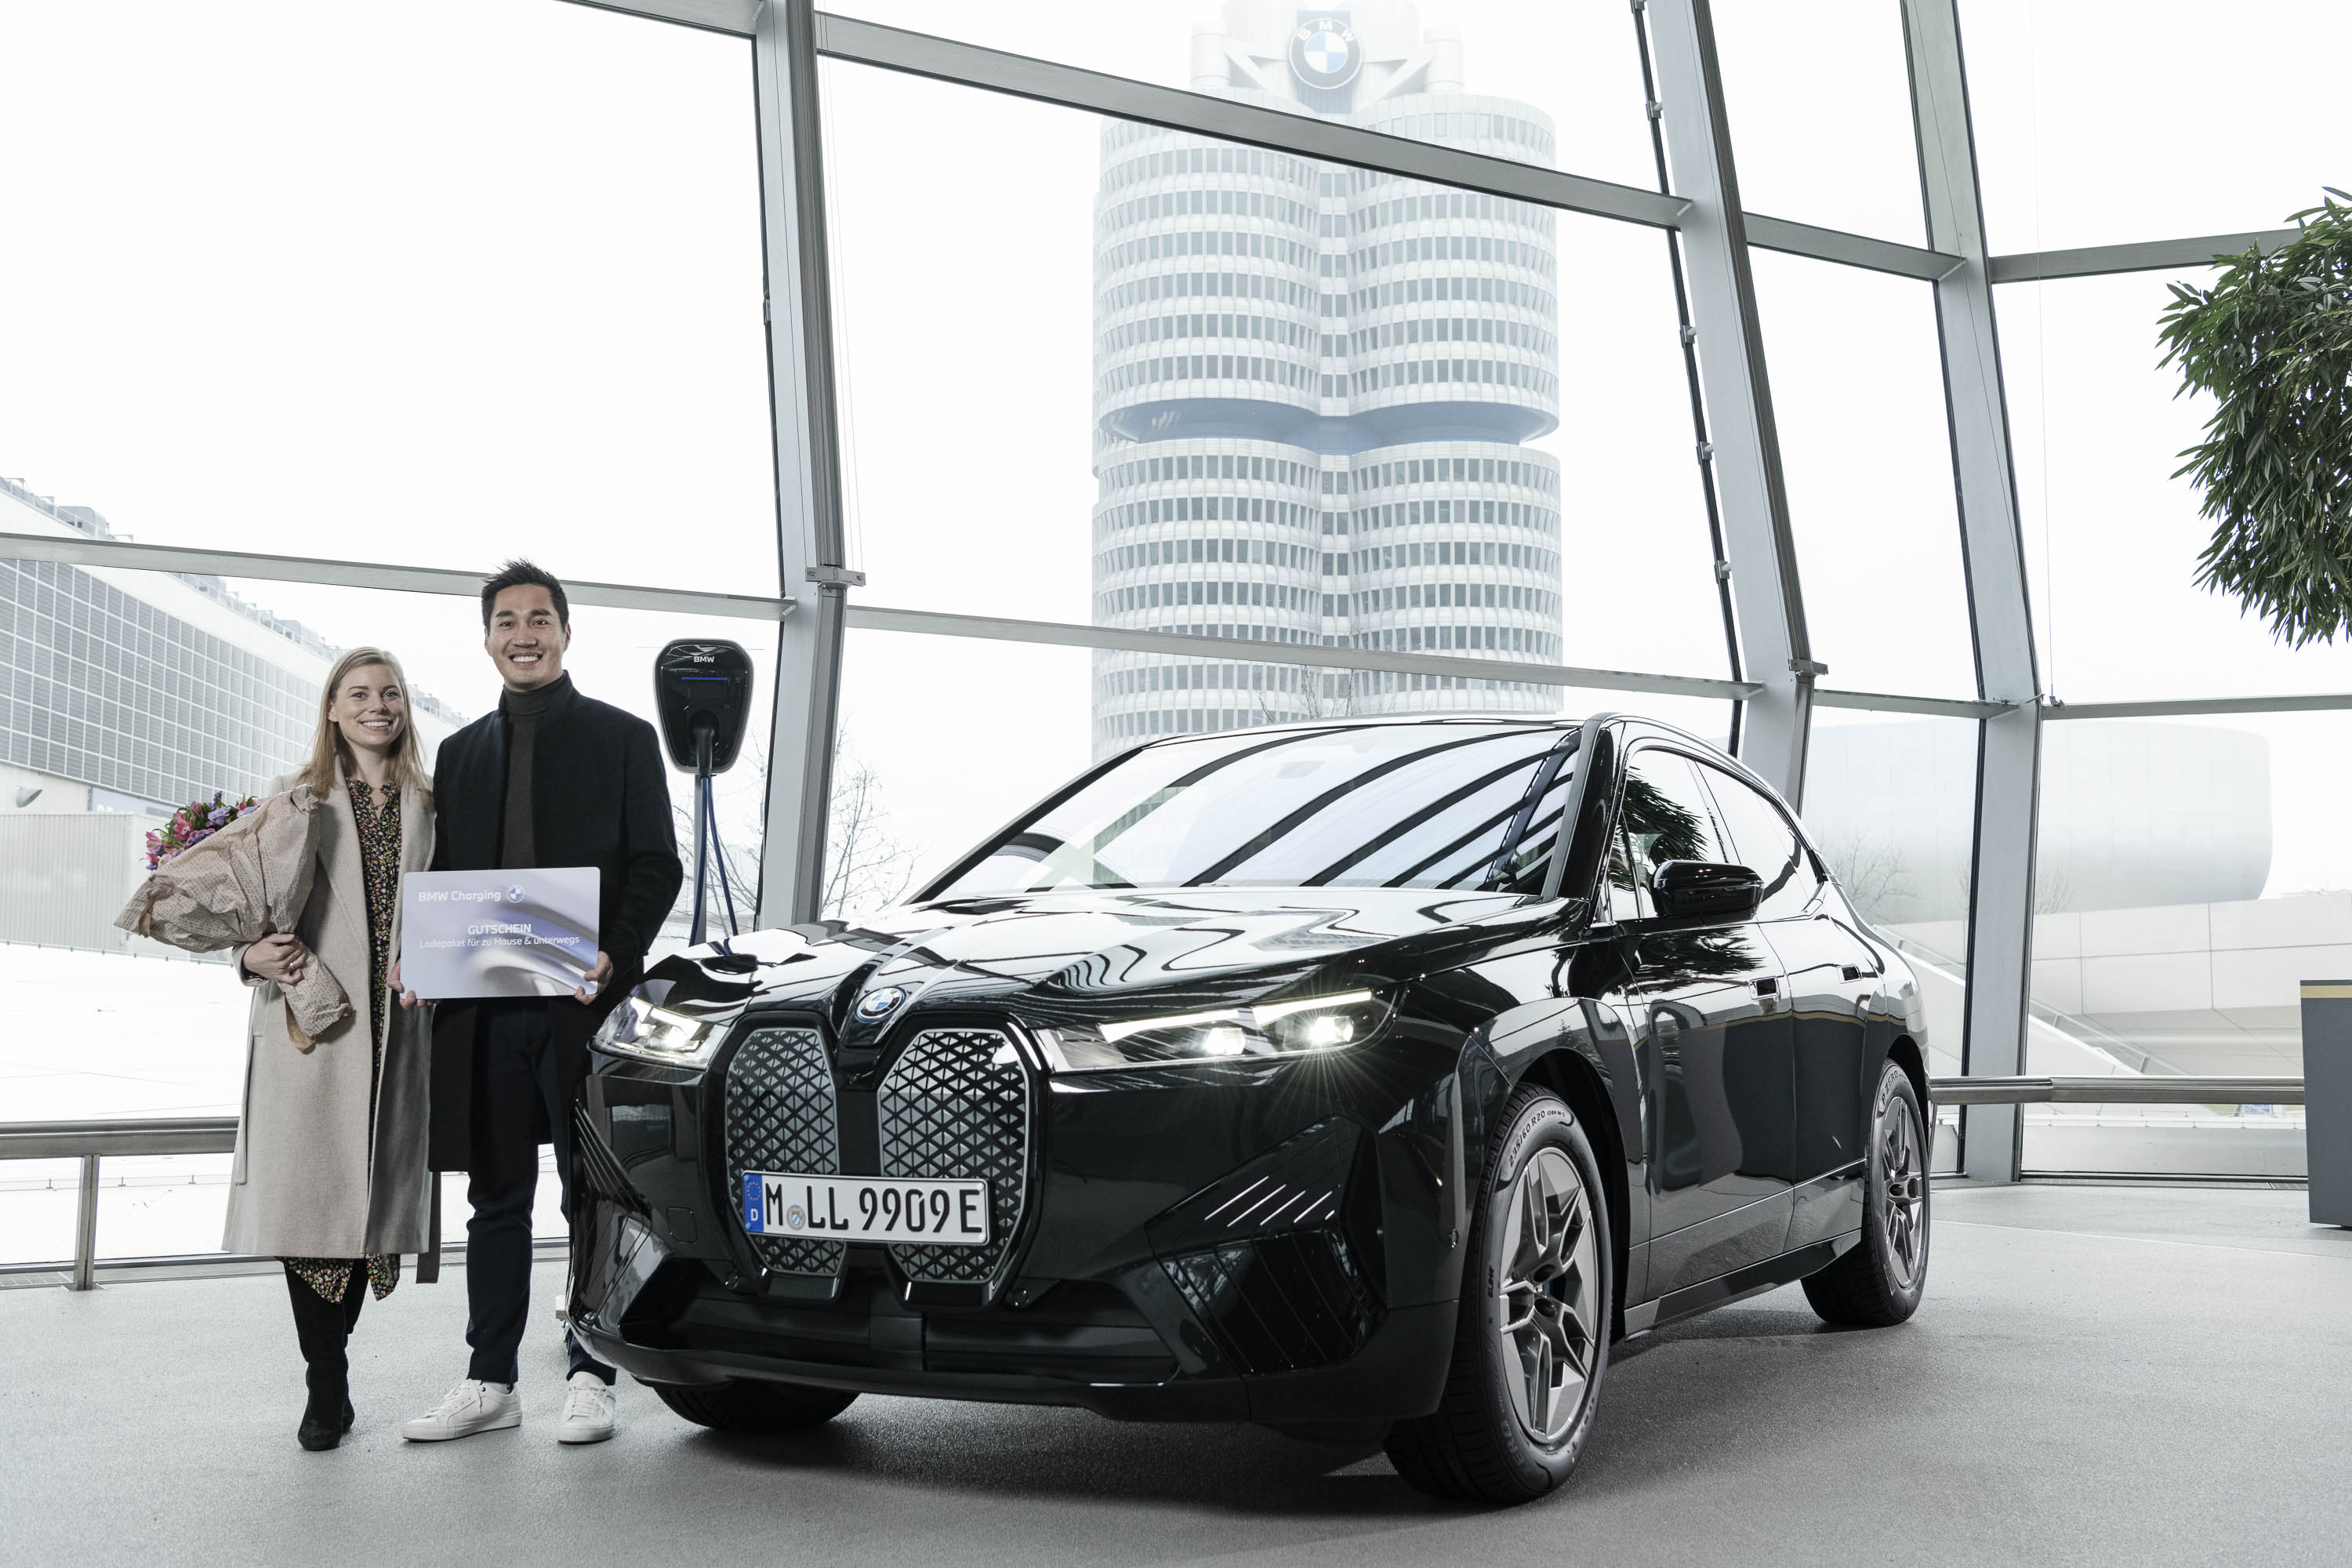 BMW a déjà livré un million de véhicules électriques, comme prévu